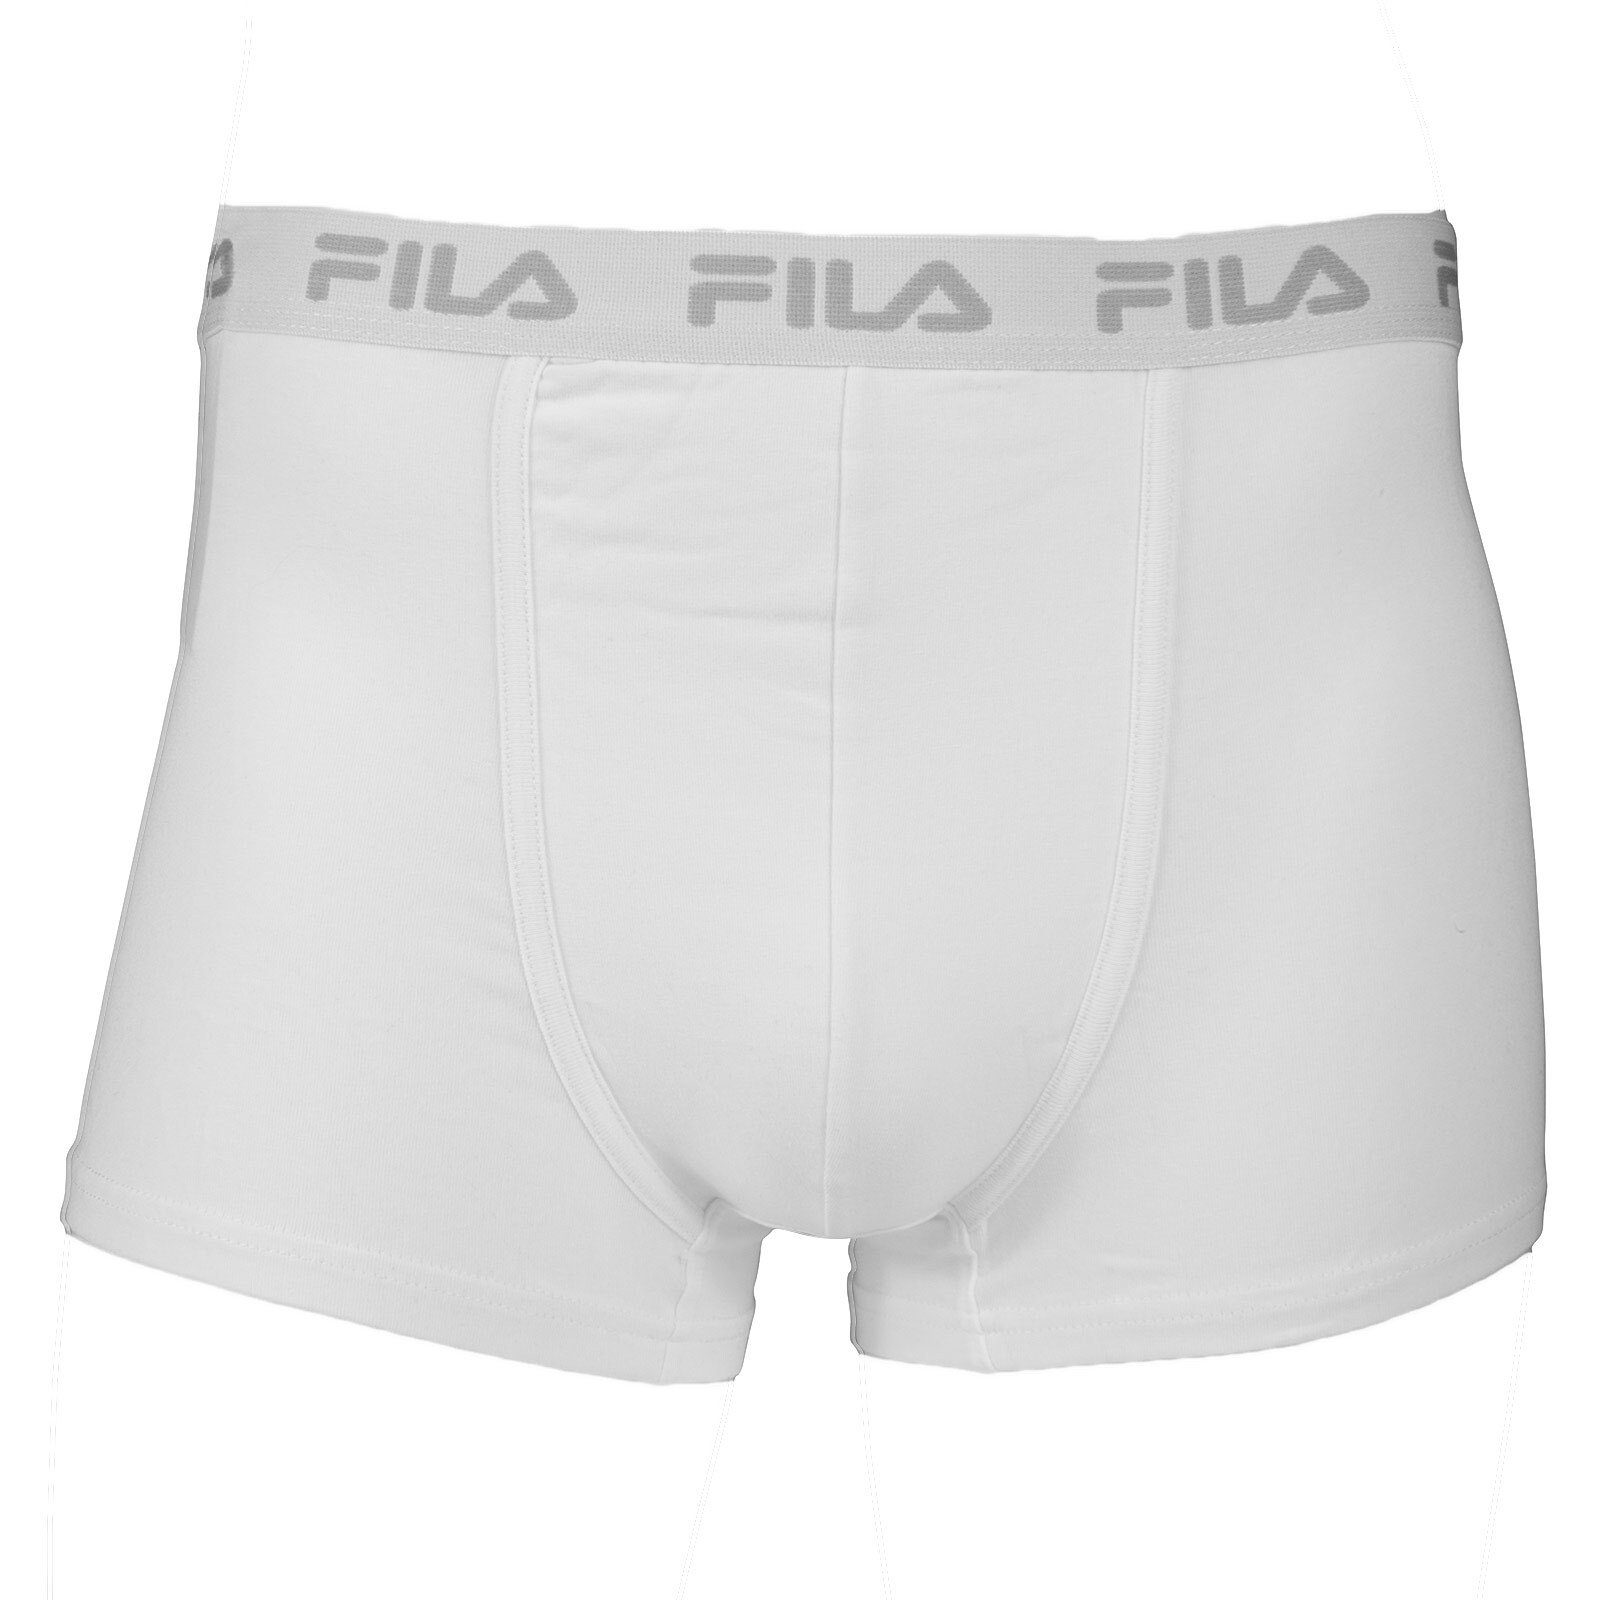 Fila Boxer Herren Basic Boxer Shorts, Elastic mit Logo - Weiß (300)